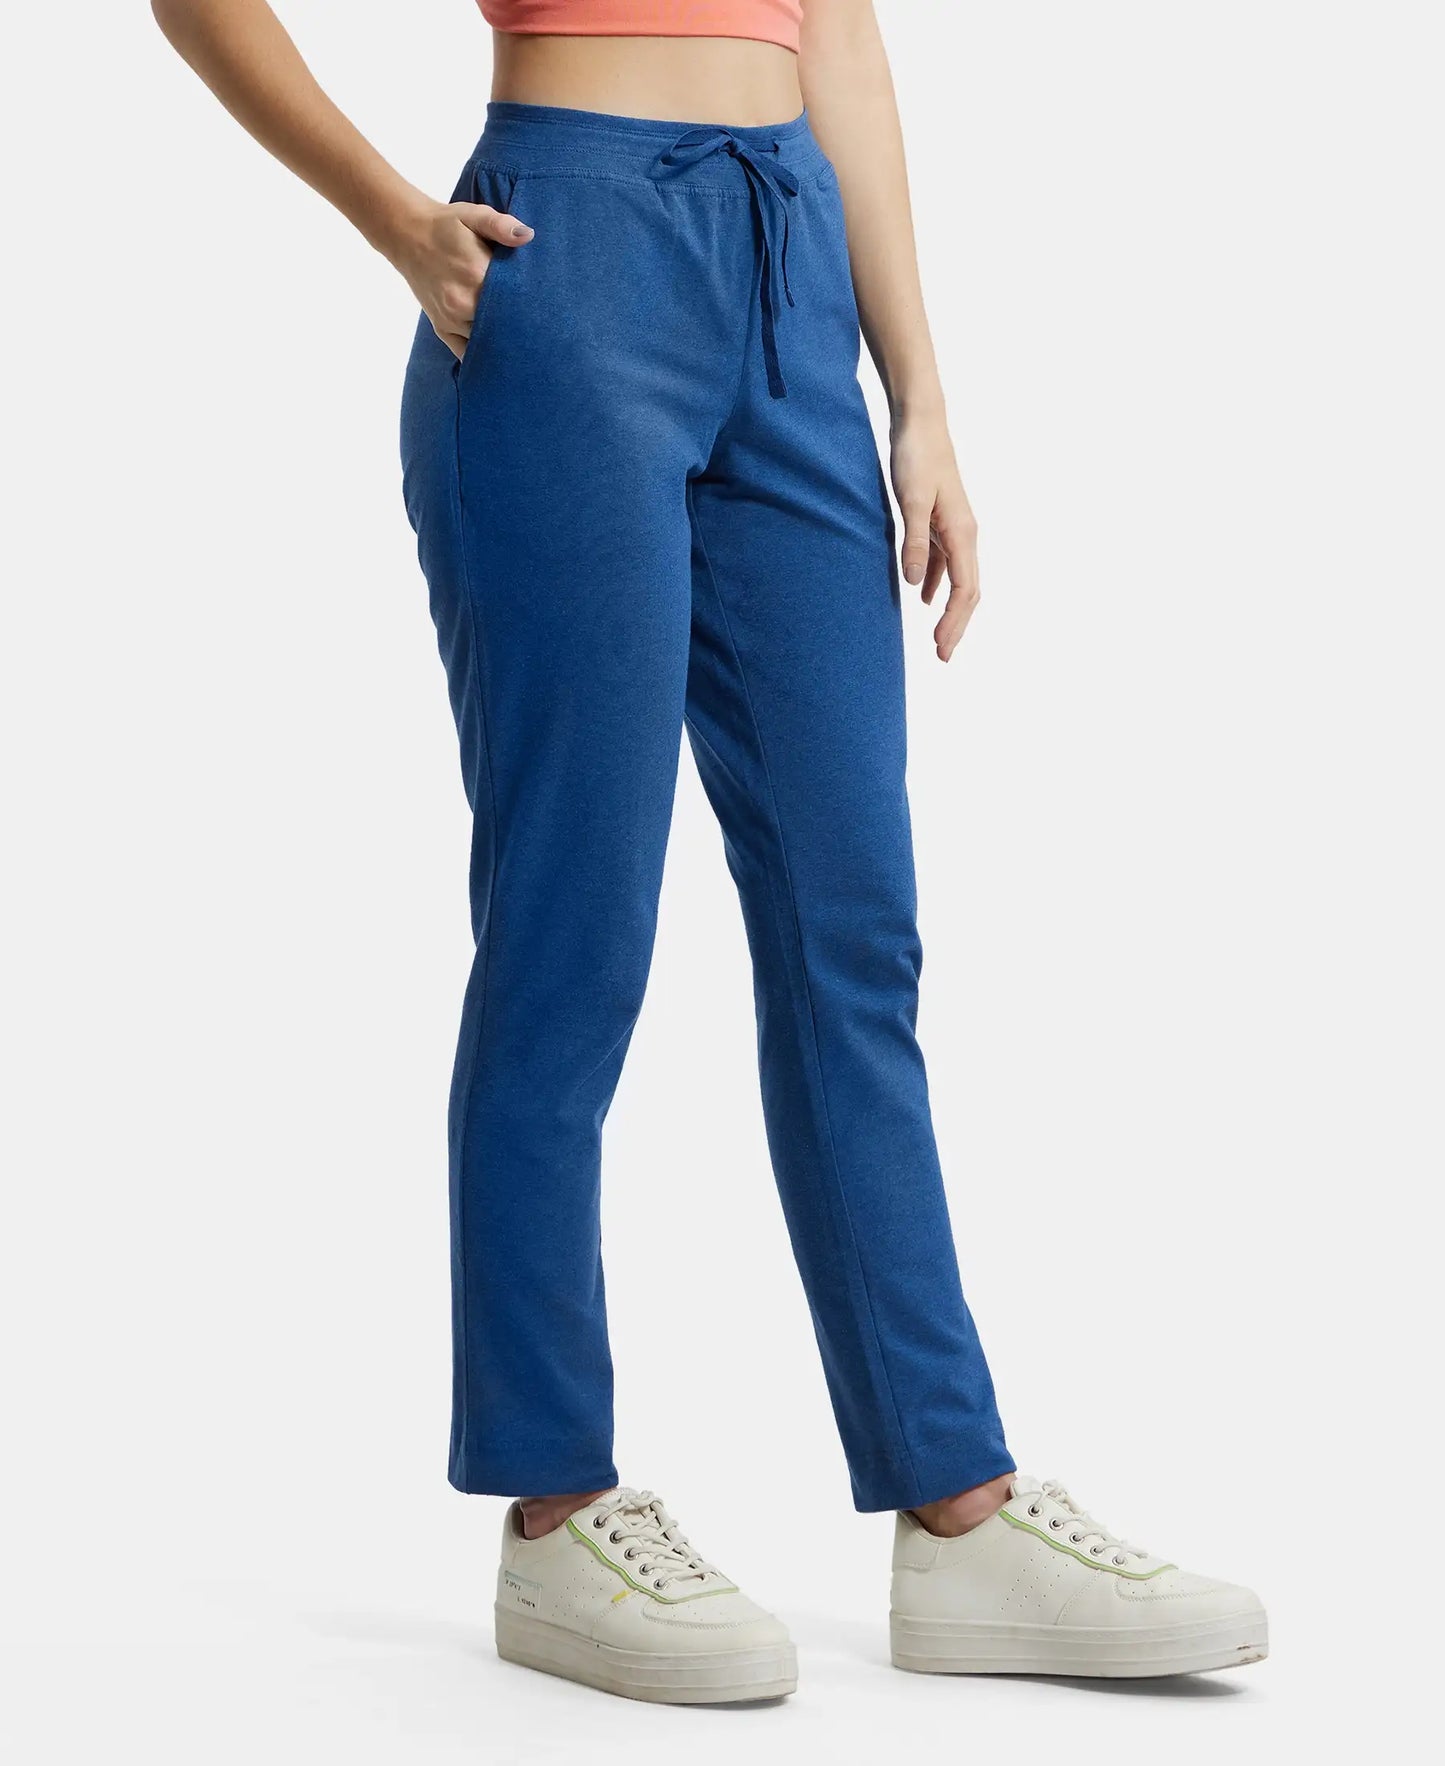 Super Combed Cotton Elastane Slim Fit Trackpants With Side Pockets - Vintage Denim Melange-2